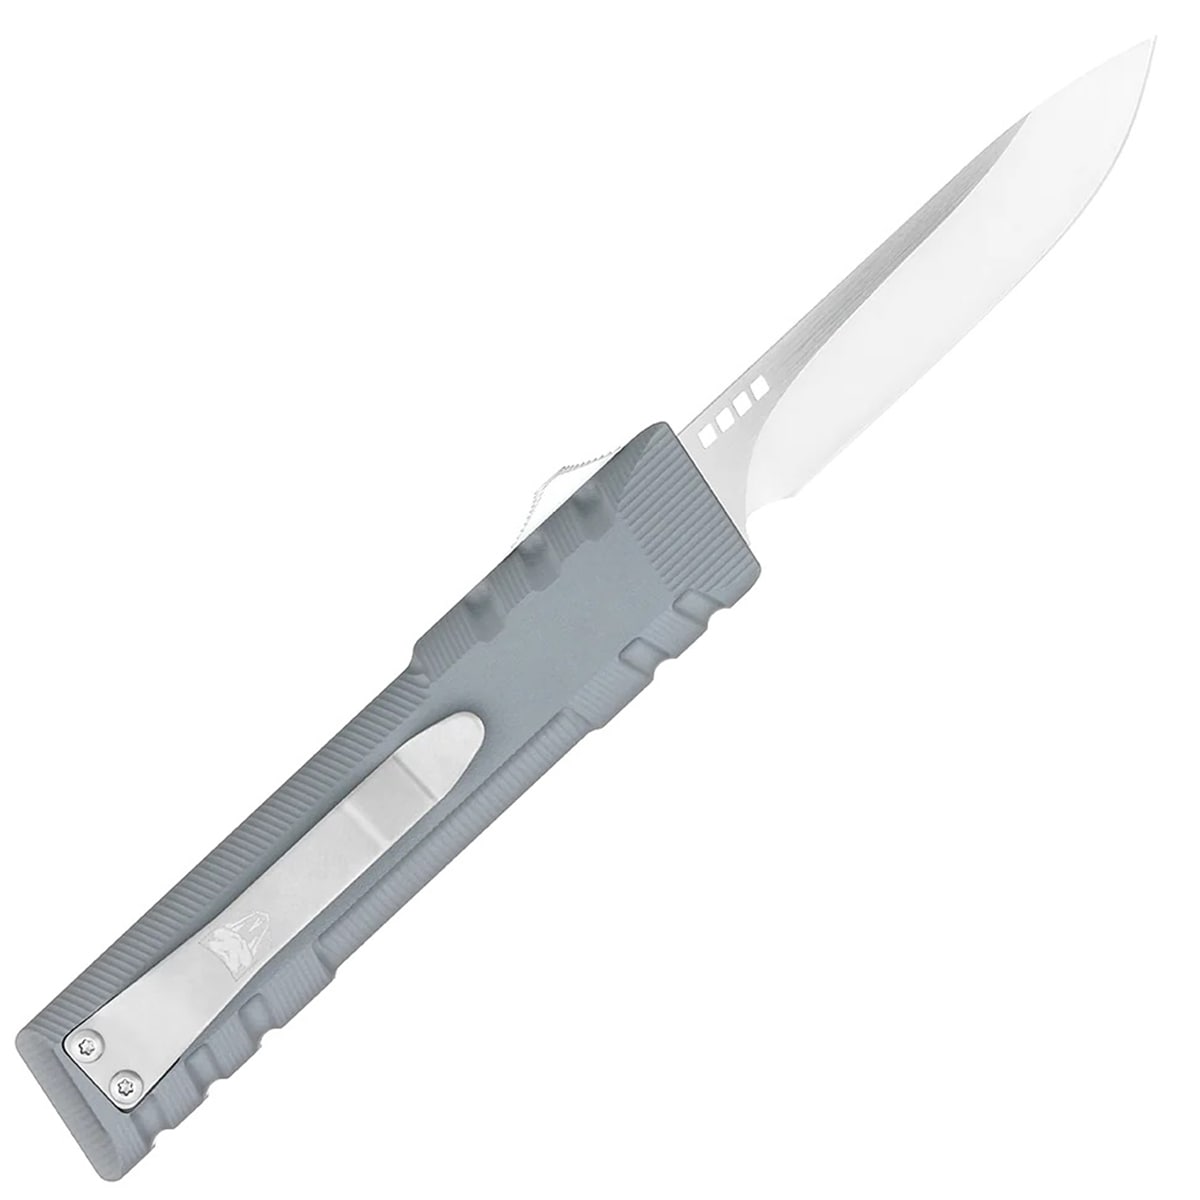 Nóż sprężynowy CobraTec Gentlemen's GEN II OTF - Grey